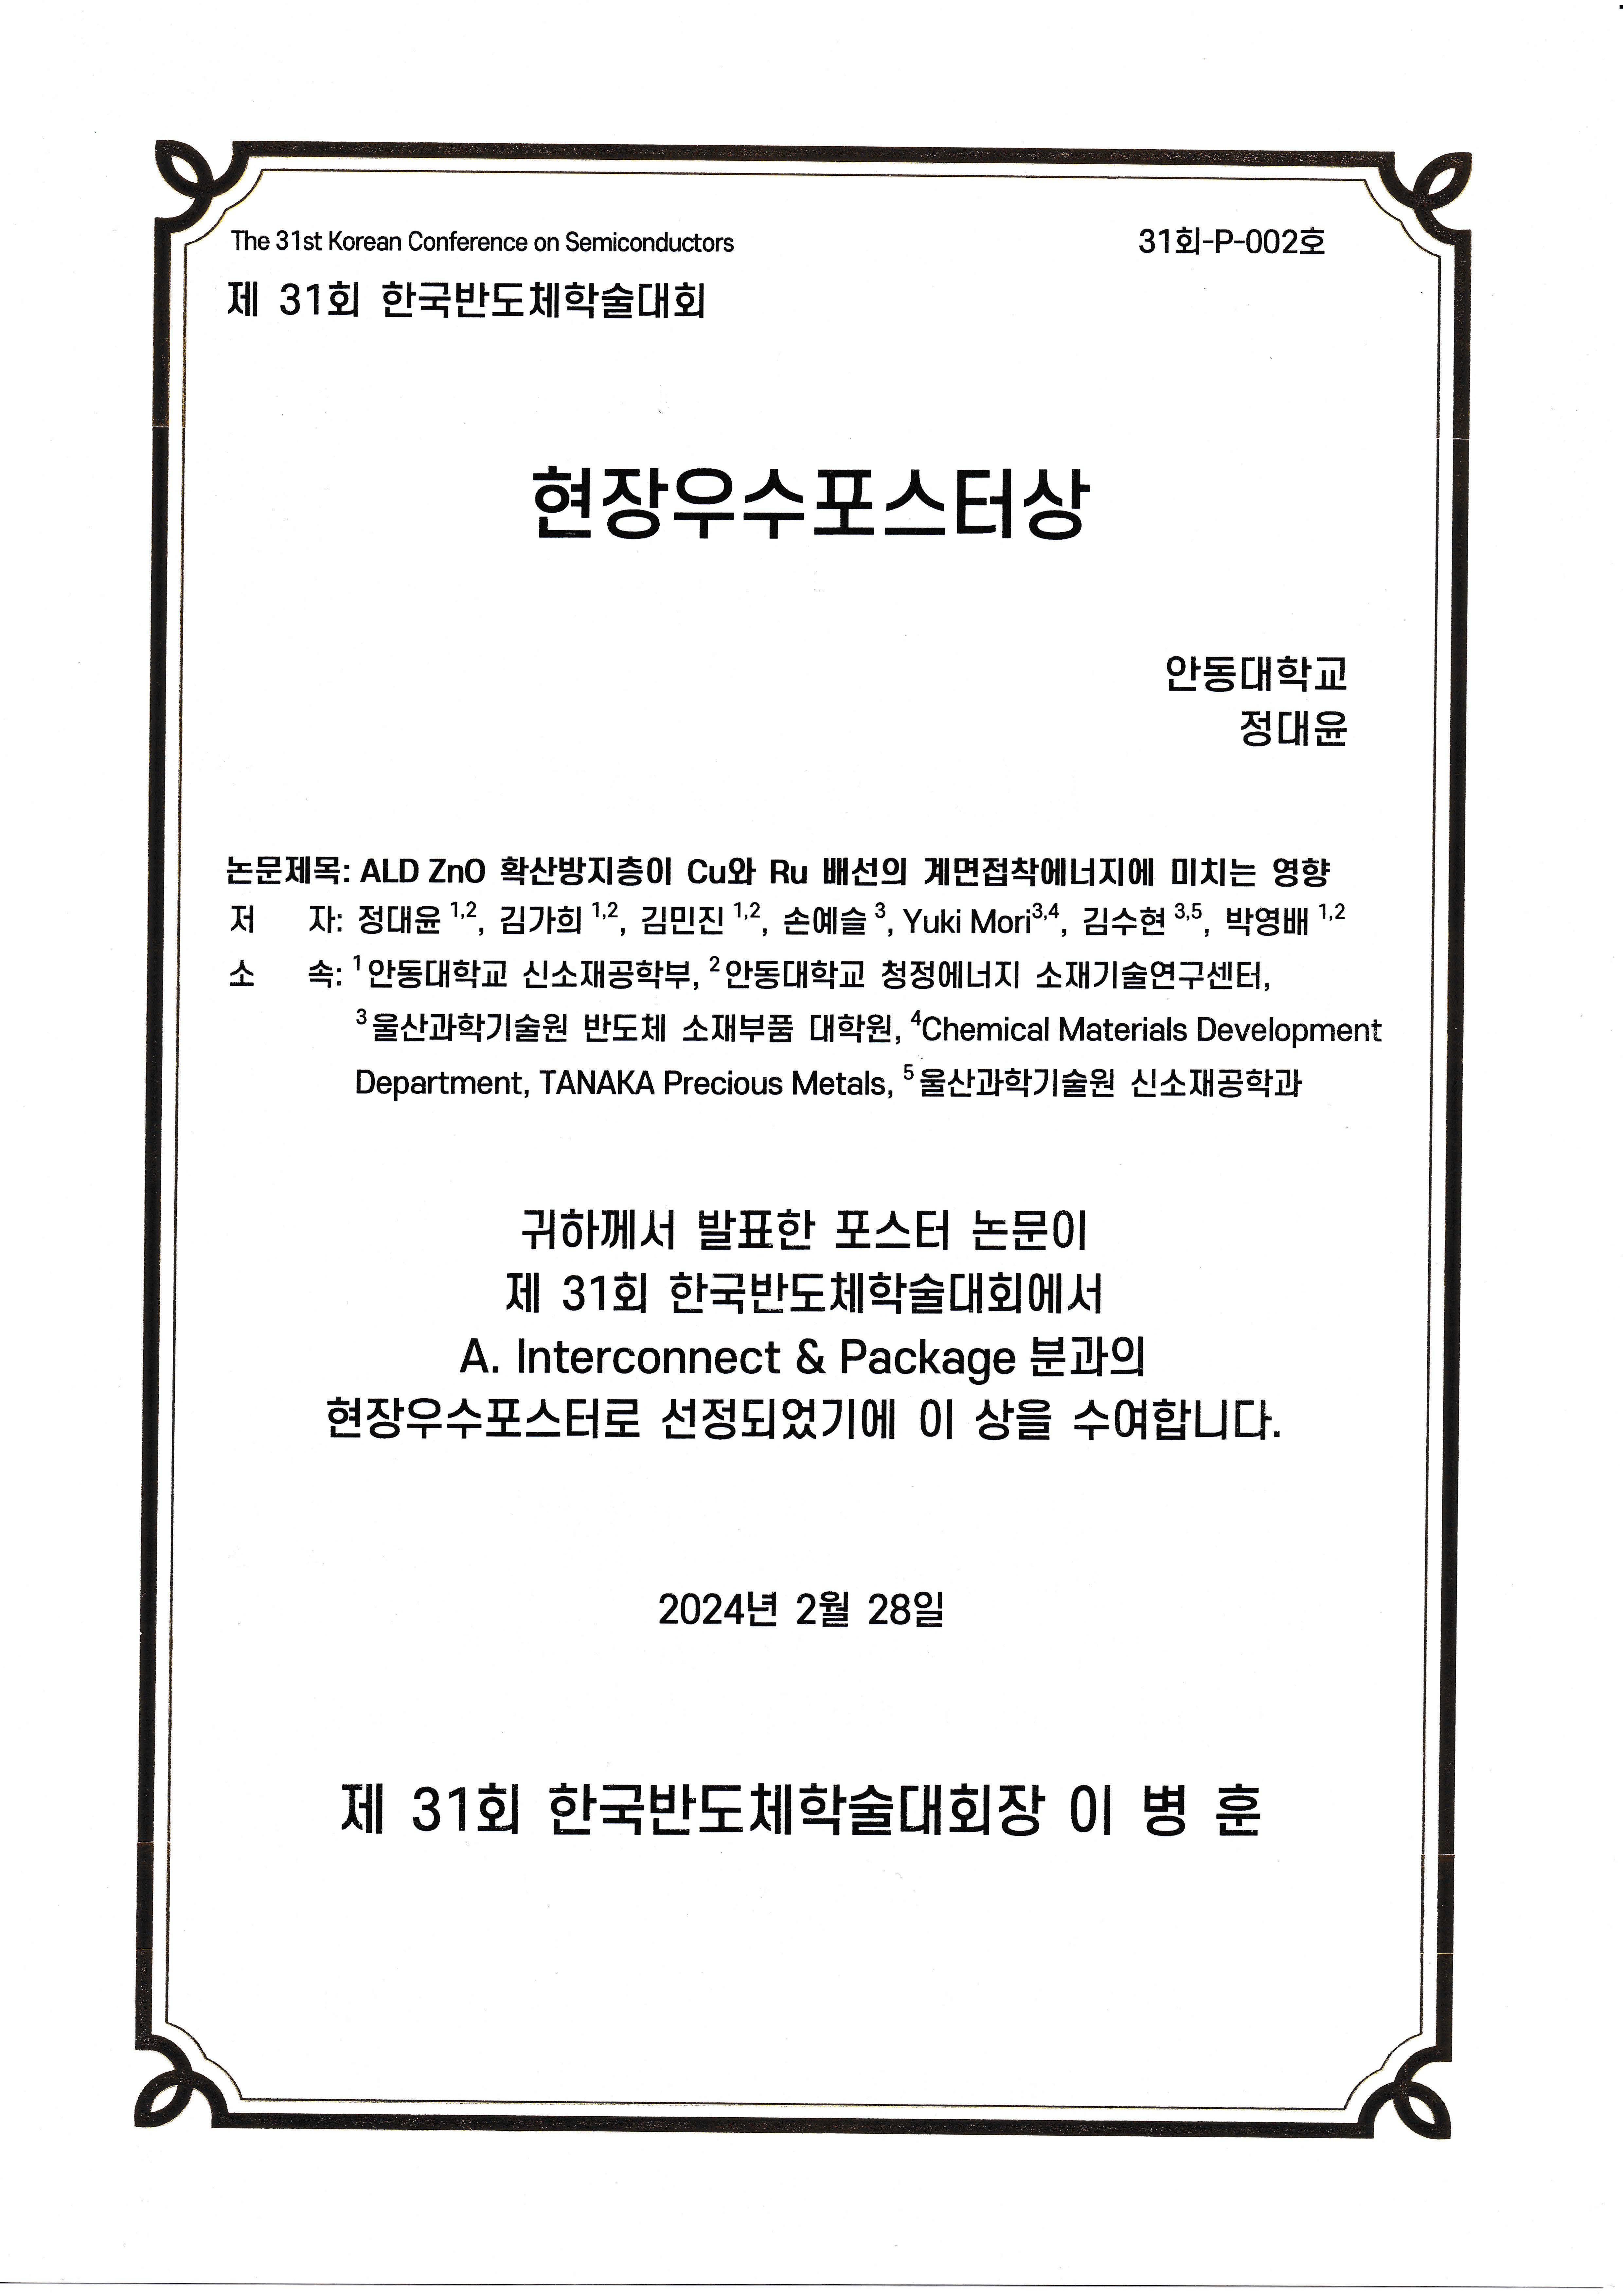 제 31회 한국반도체학술대회 현장우수포스터상 수상